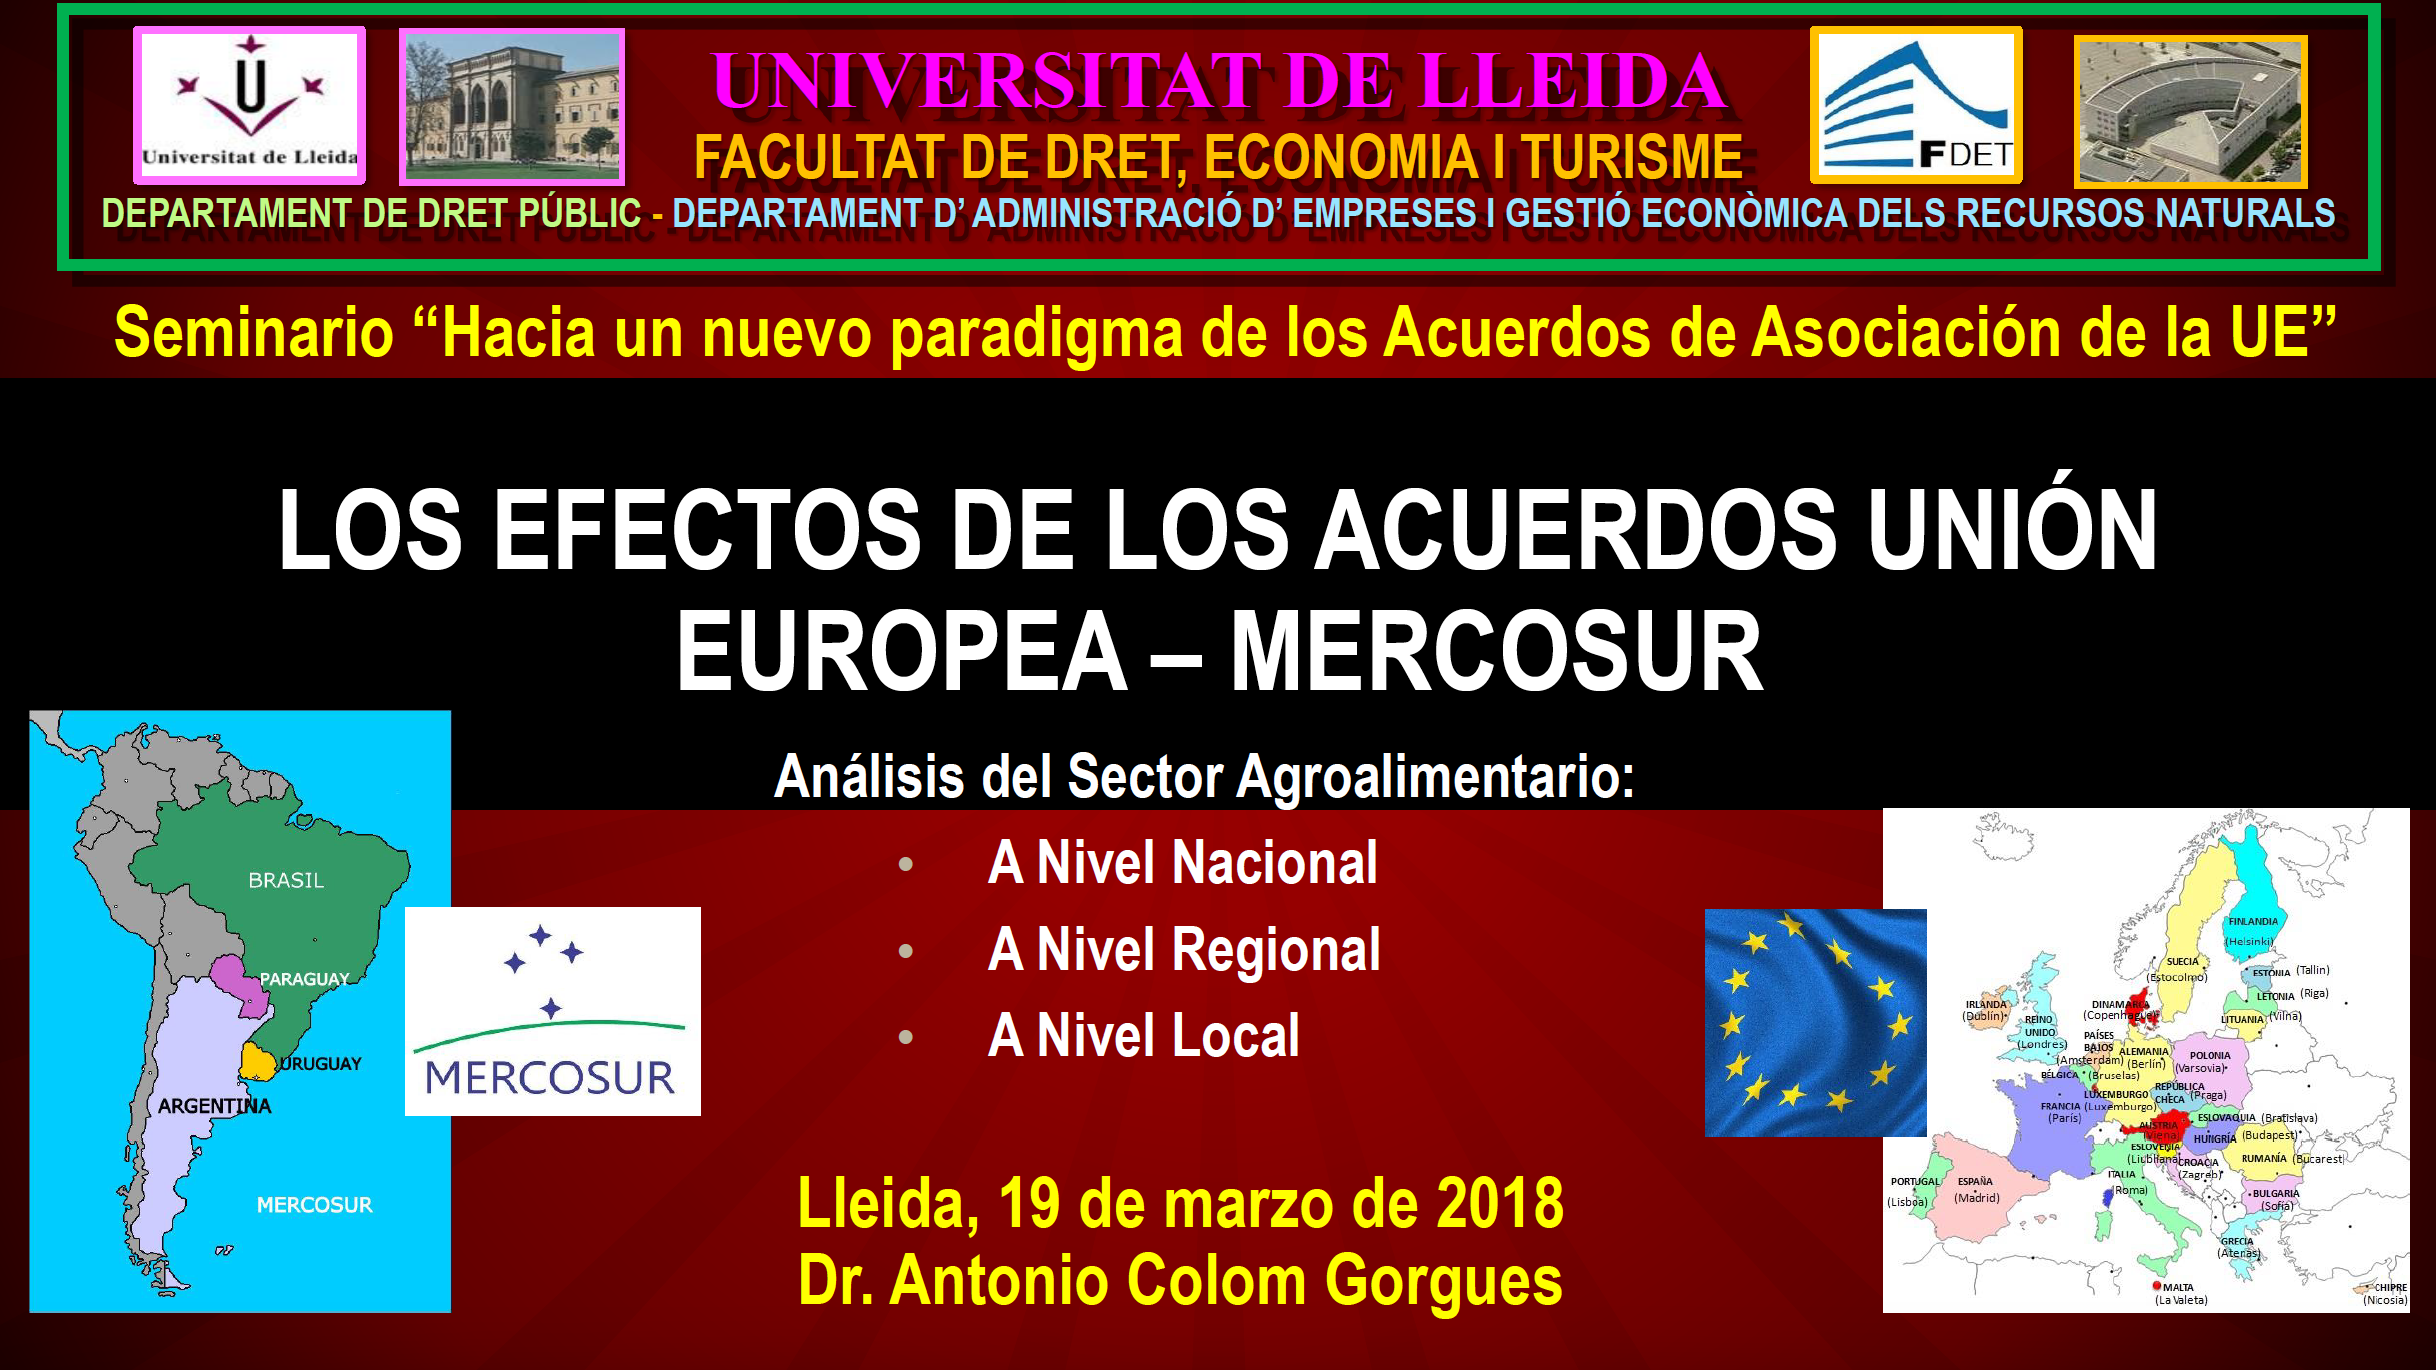 Los efectos de los acuerdos Unión Europea-Mercosur